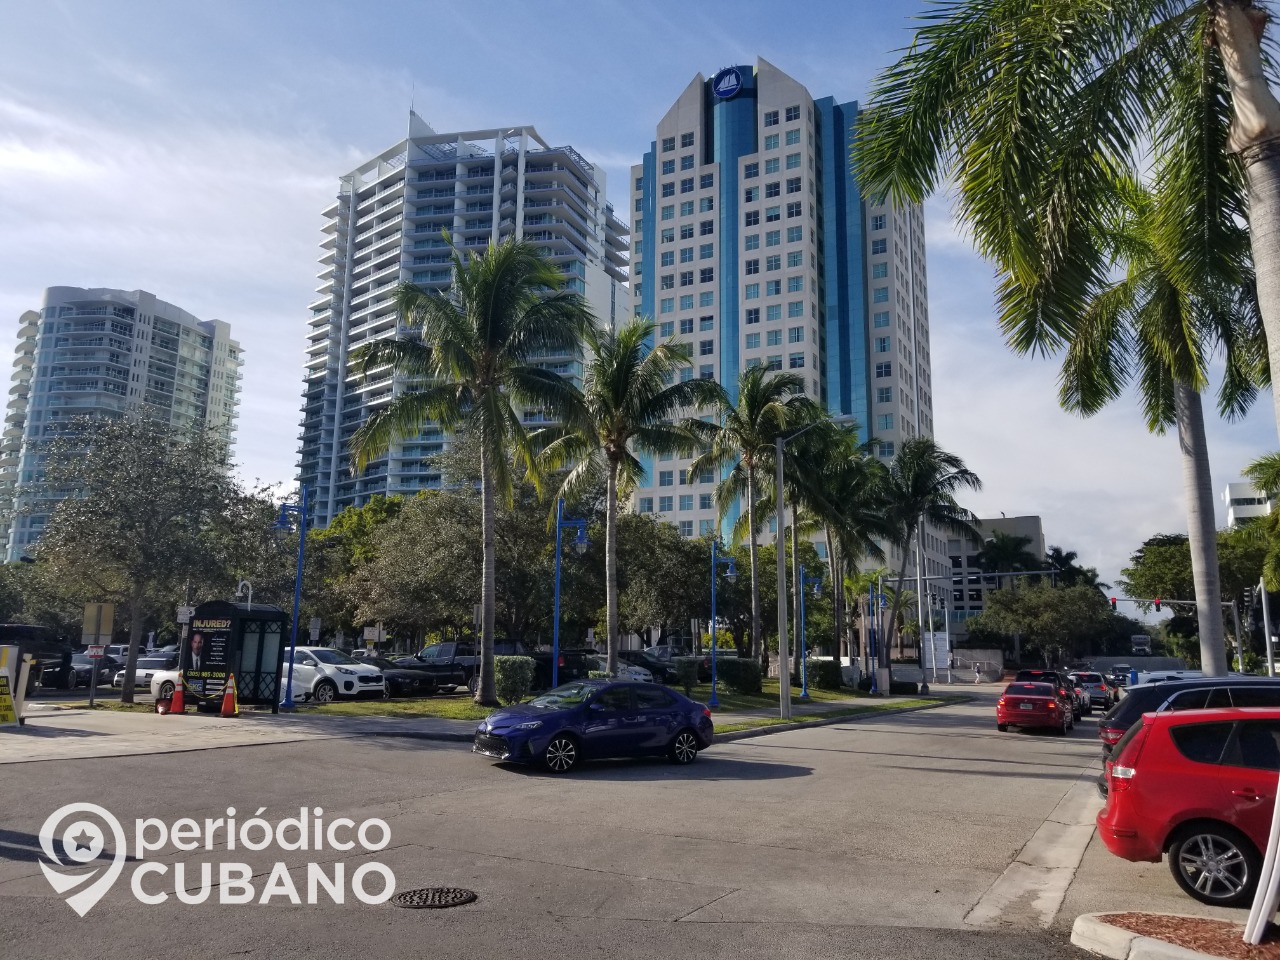 Evacúan edificios en Miami como consecuencia del terremoto en Cuba